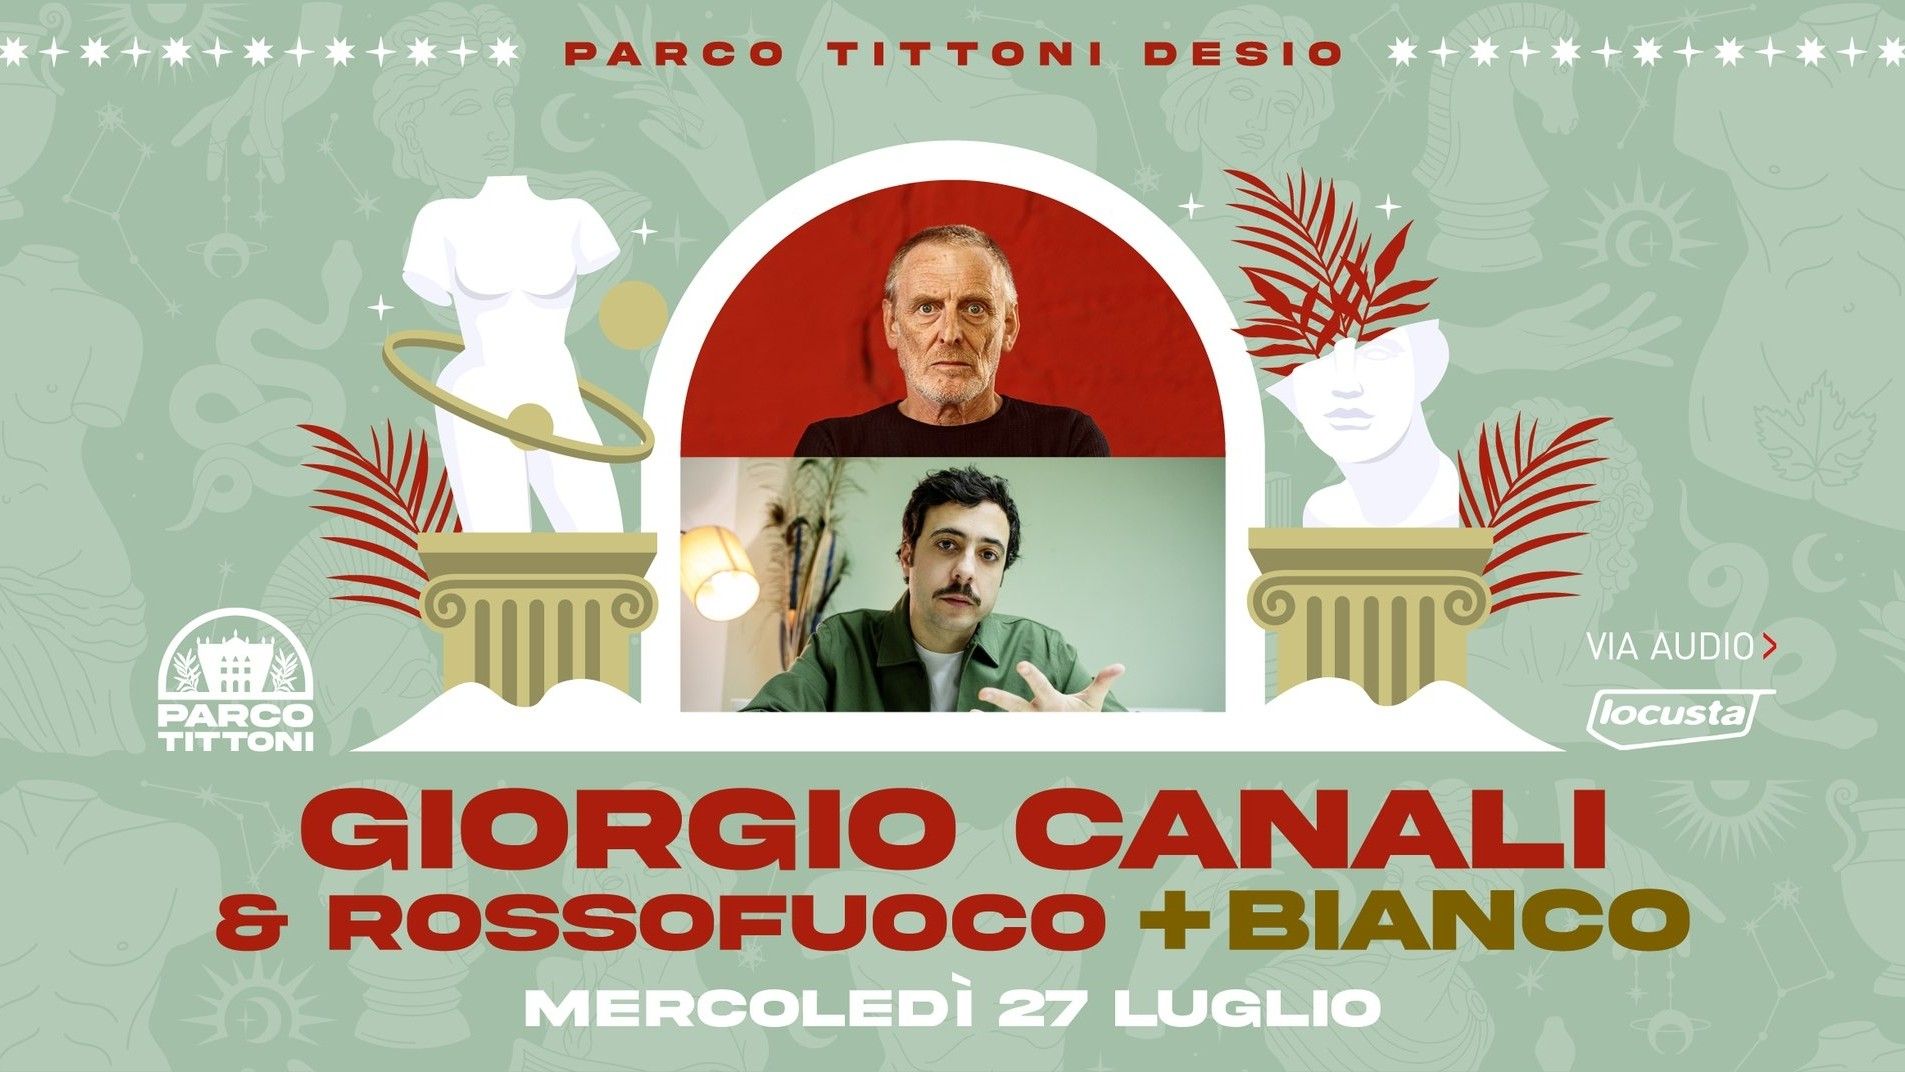 Giorgio Canali & Rossofuoco + Bianco